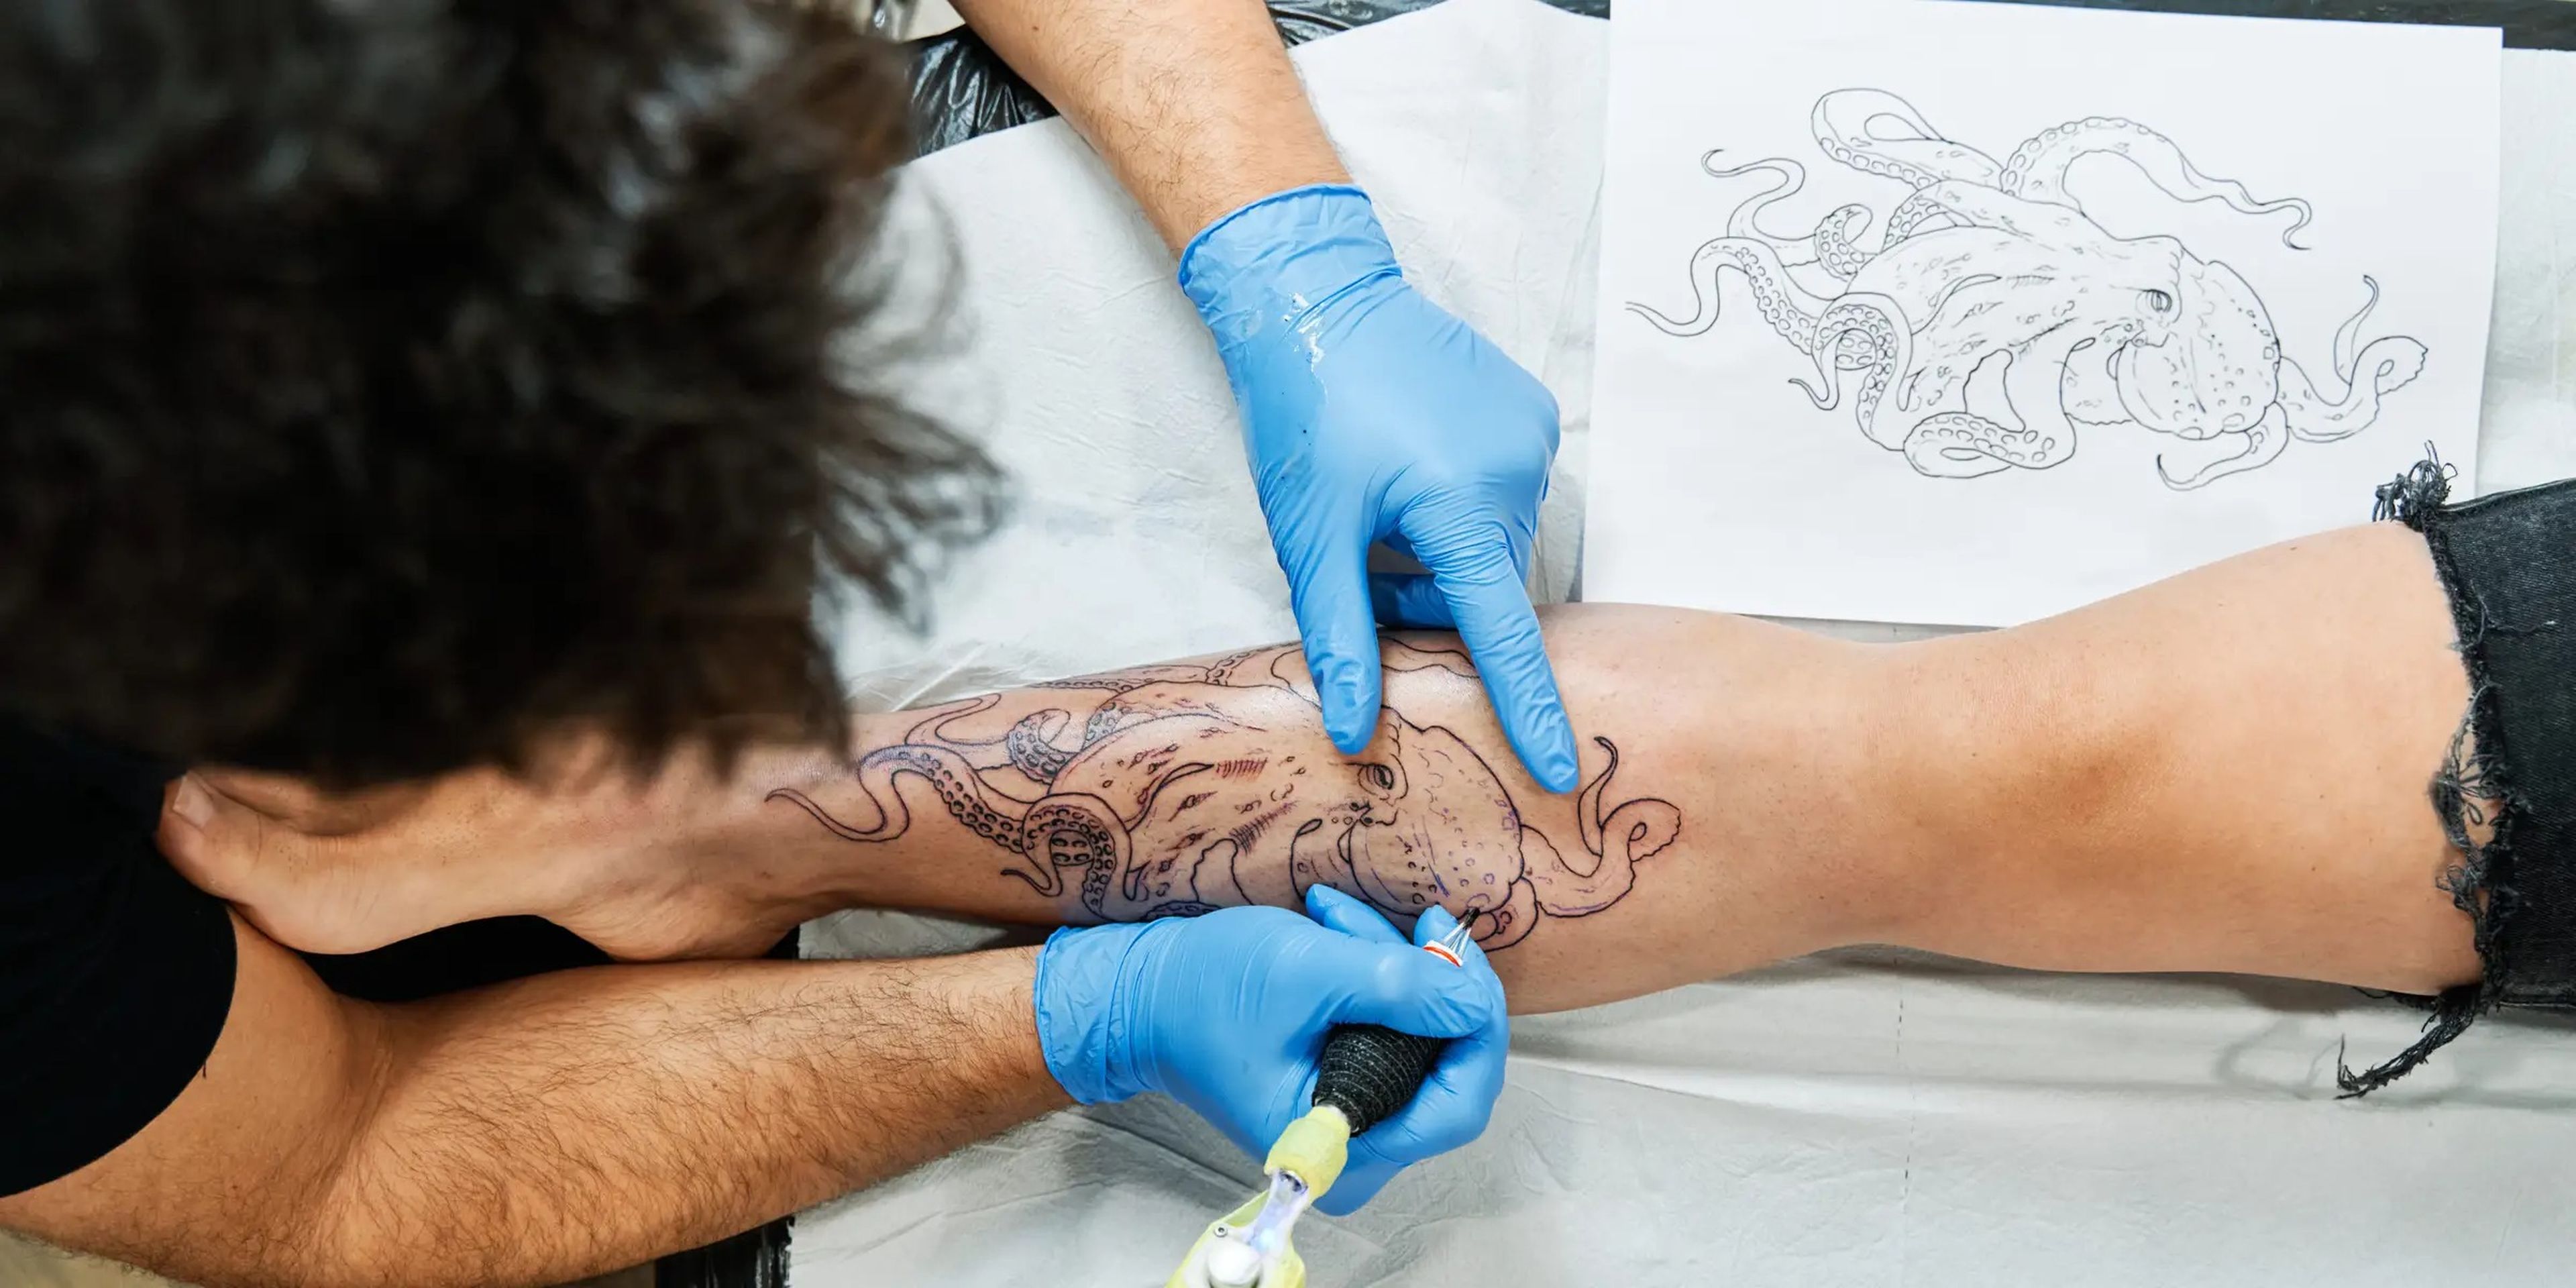 Tattoo artst inking octopus design on client's leg